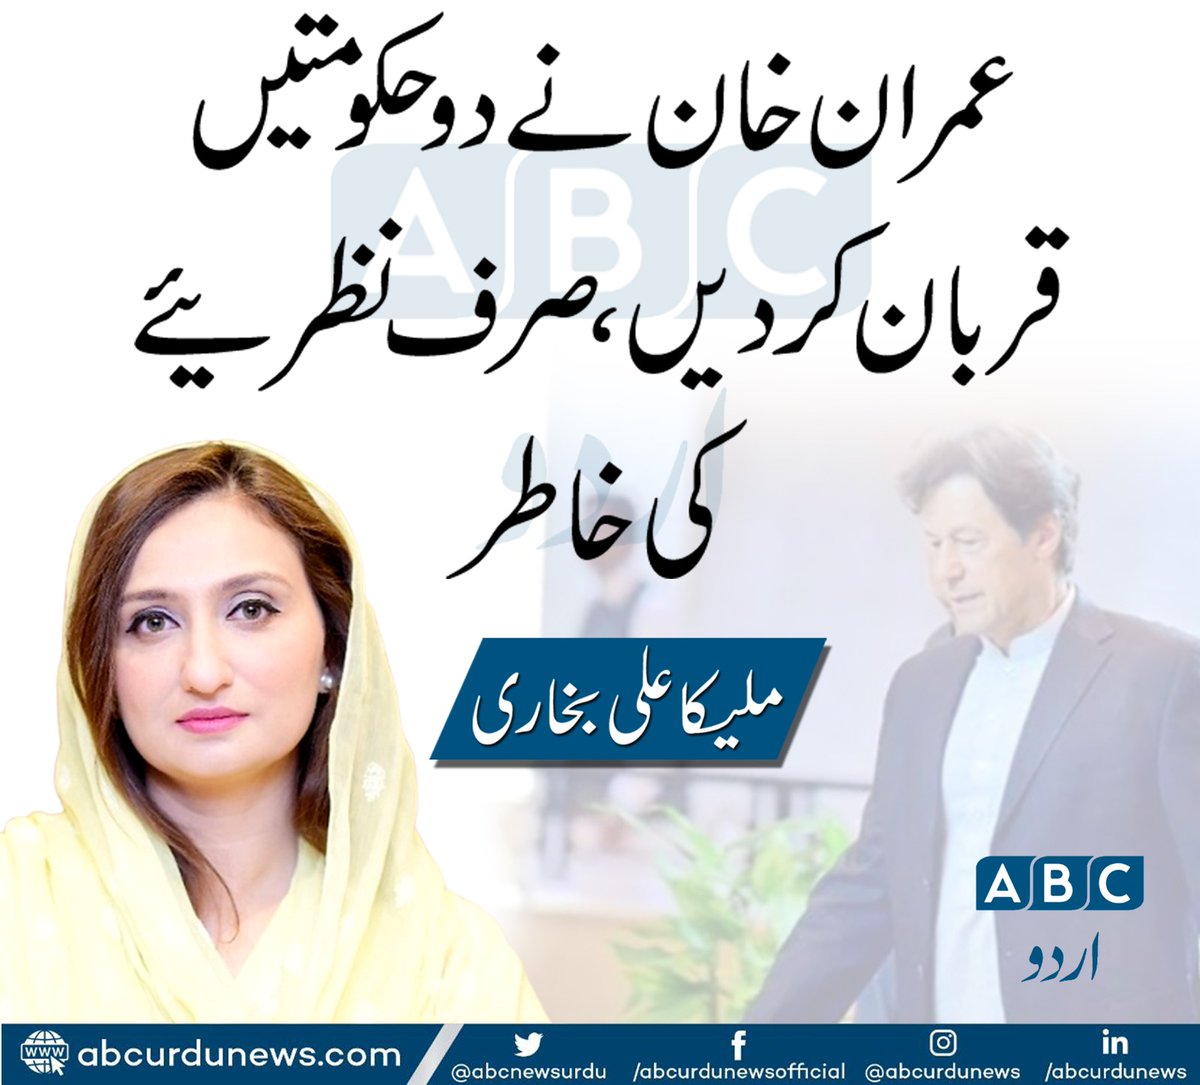 عمران خان نے دو حکومتیں قربان کردی صرف نظرئیے کی خاطر. ملیکہ بخاری
@MalBokhari 
#Imrankhan